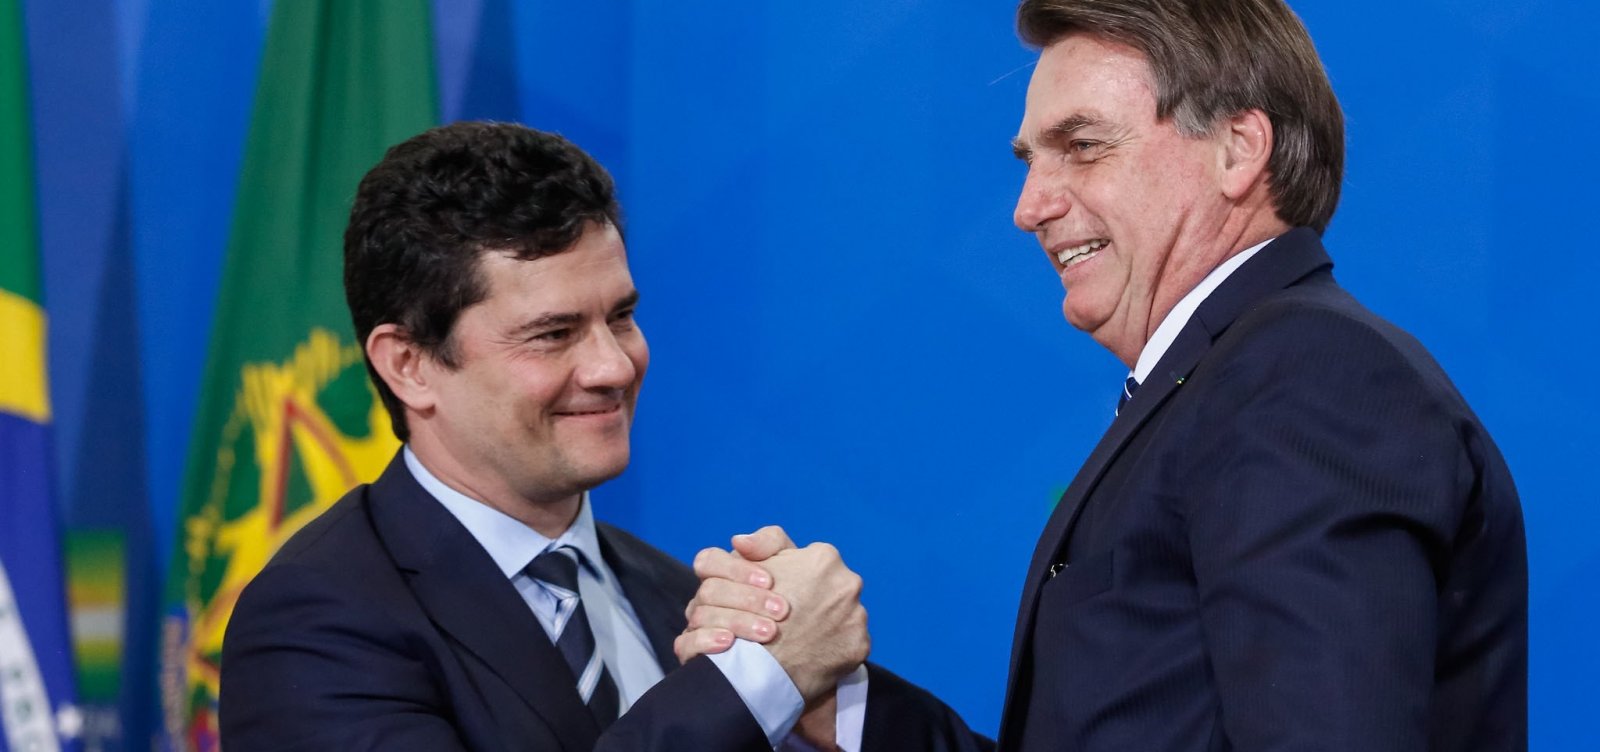 [Relatório da PF mostra que Bolsonaro recomendou demissão a Moro]